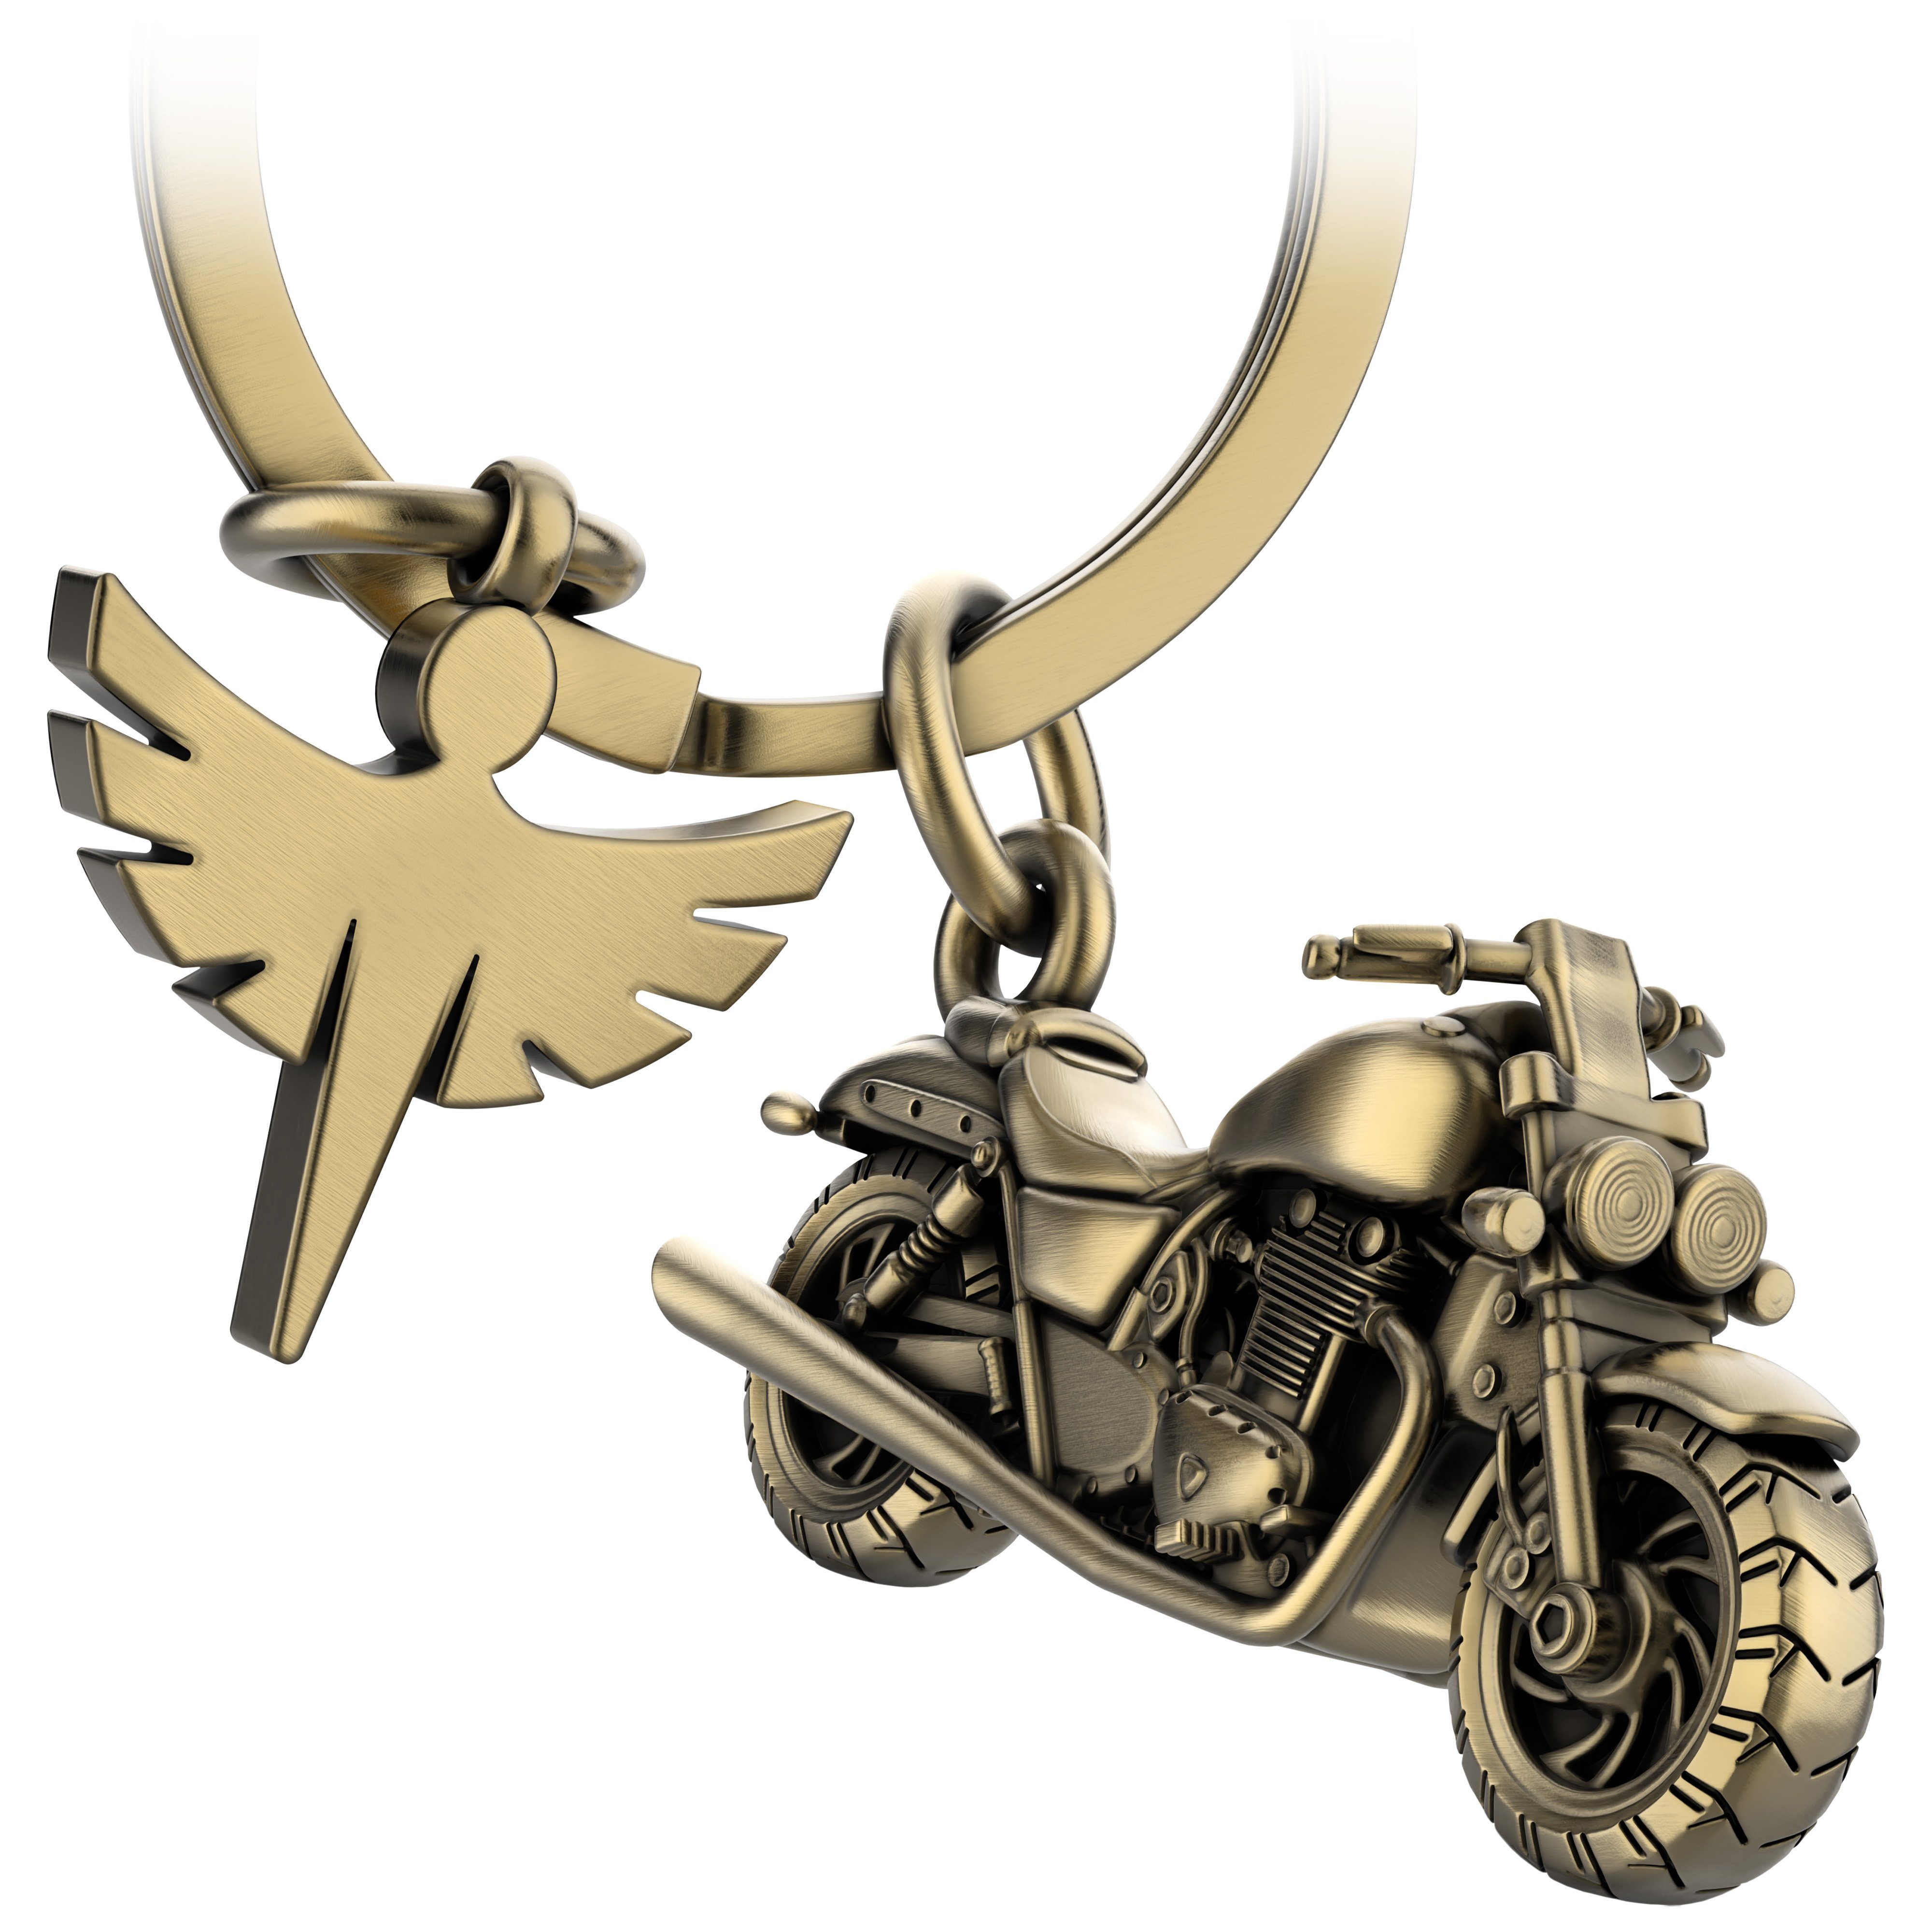 FABACH mit - Engel Schlüsselanhänger Motorradfahrer Antique Schutzengel Glücksbringer Chopper Motorrad Bronze